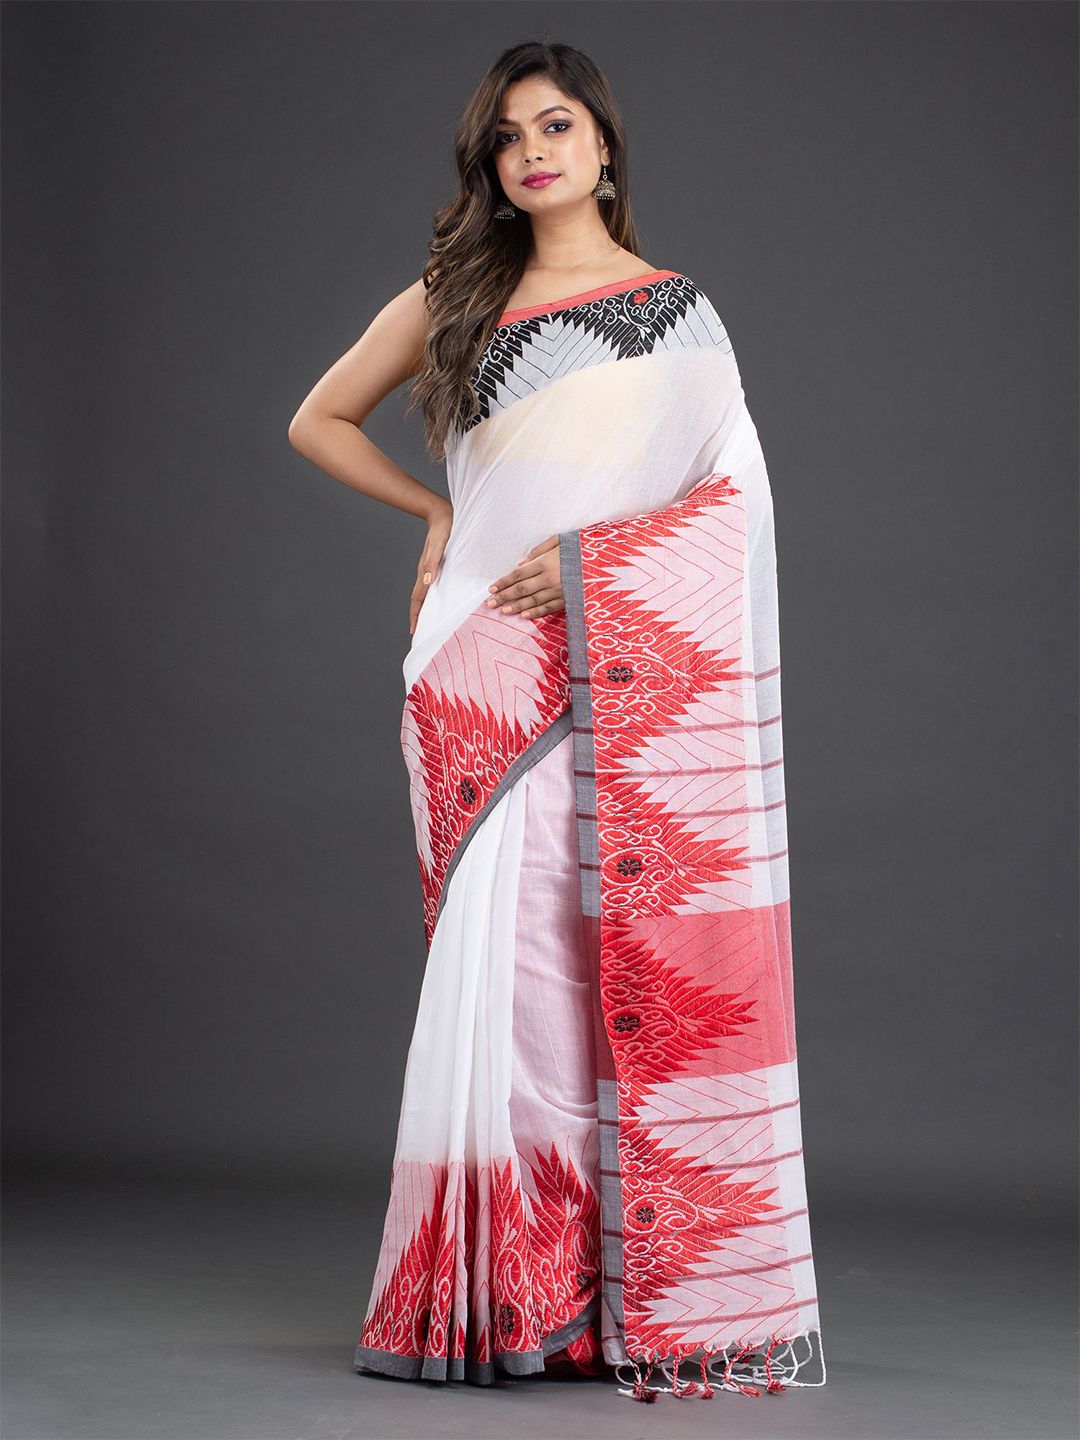 Arhi White & Red Woven Design Pure Cotton Saree Price in India